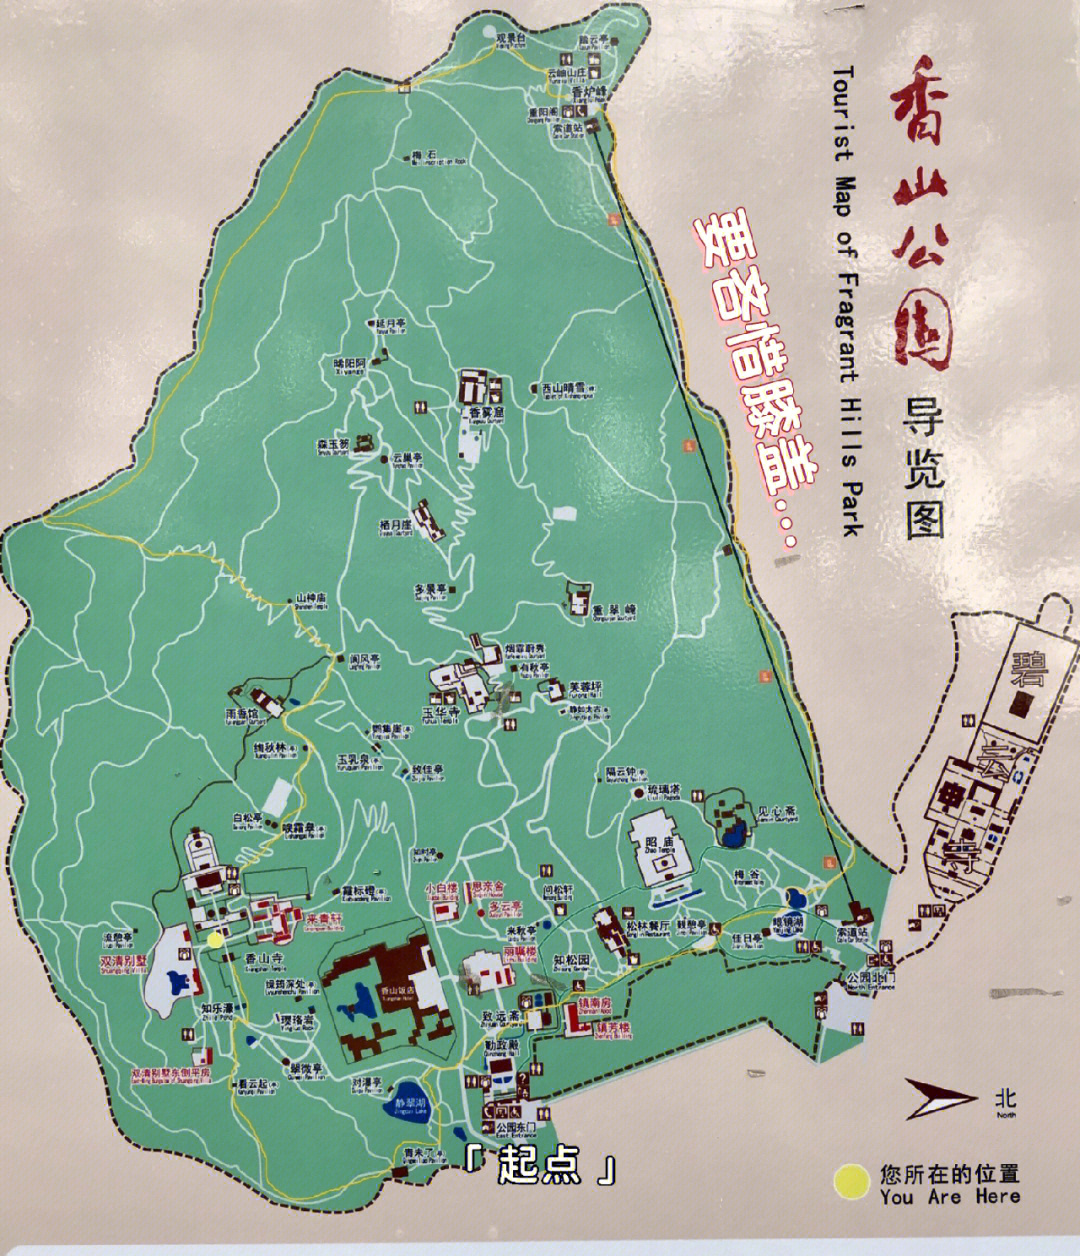 香山公园游览回忆